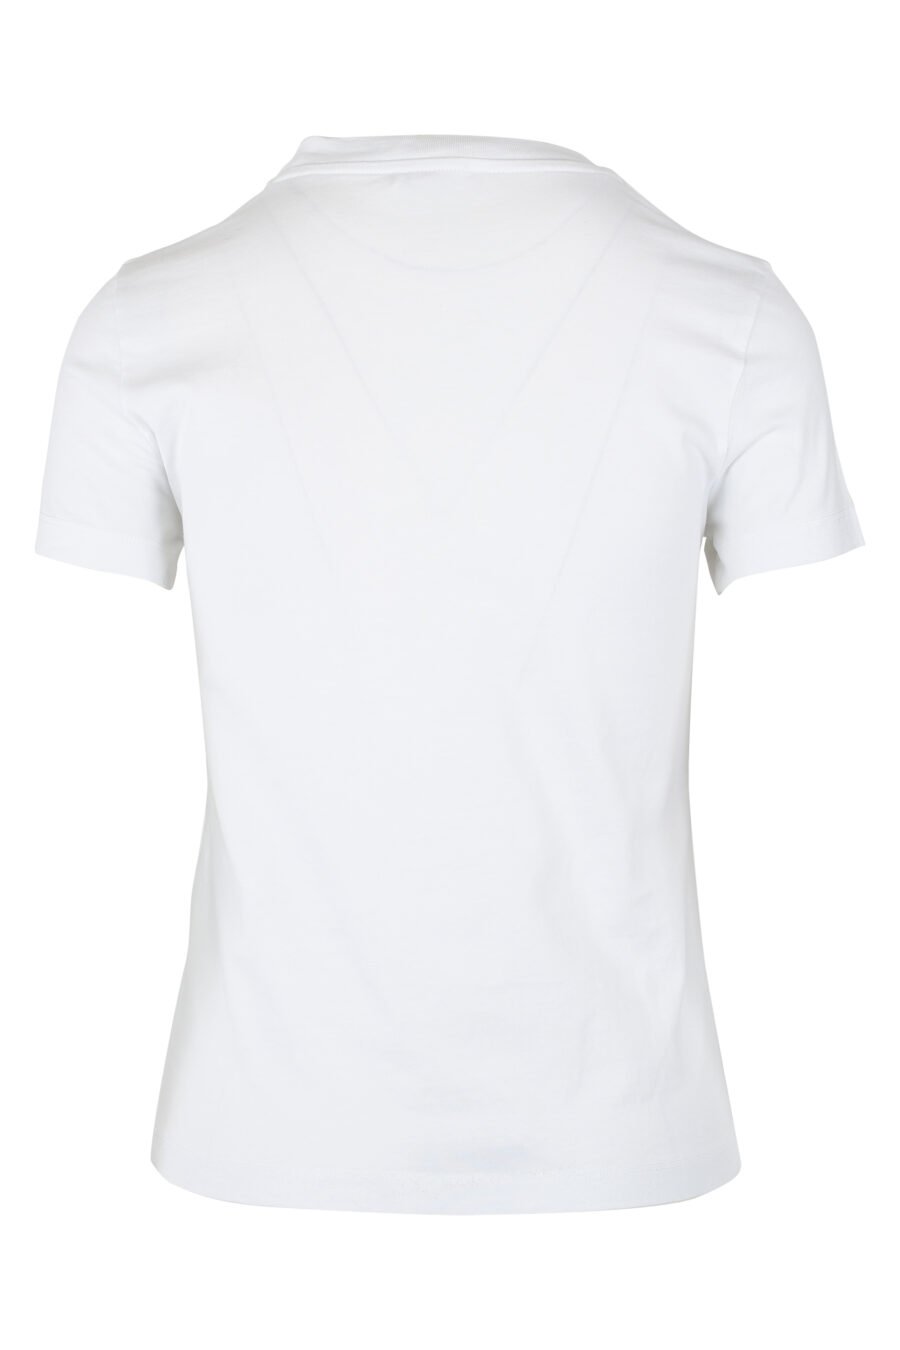 T-shirt branca com minilogo vermelho - IMG 9525